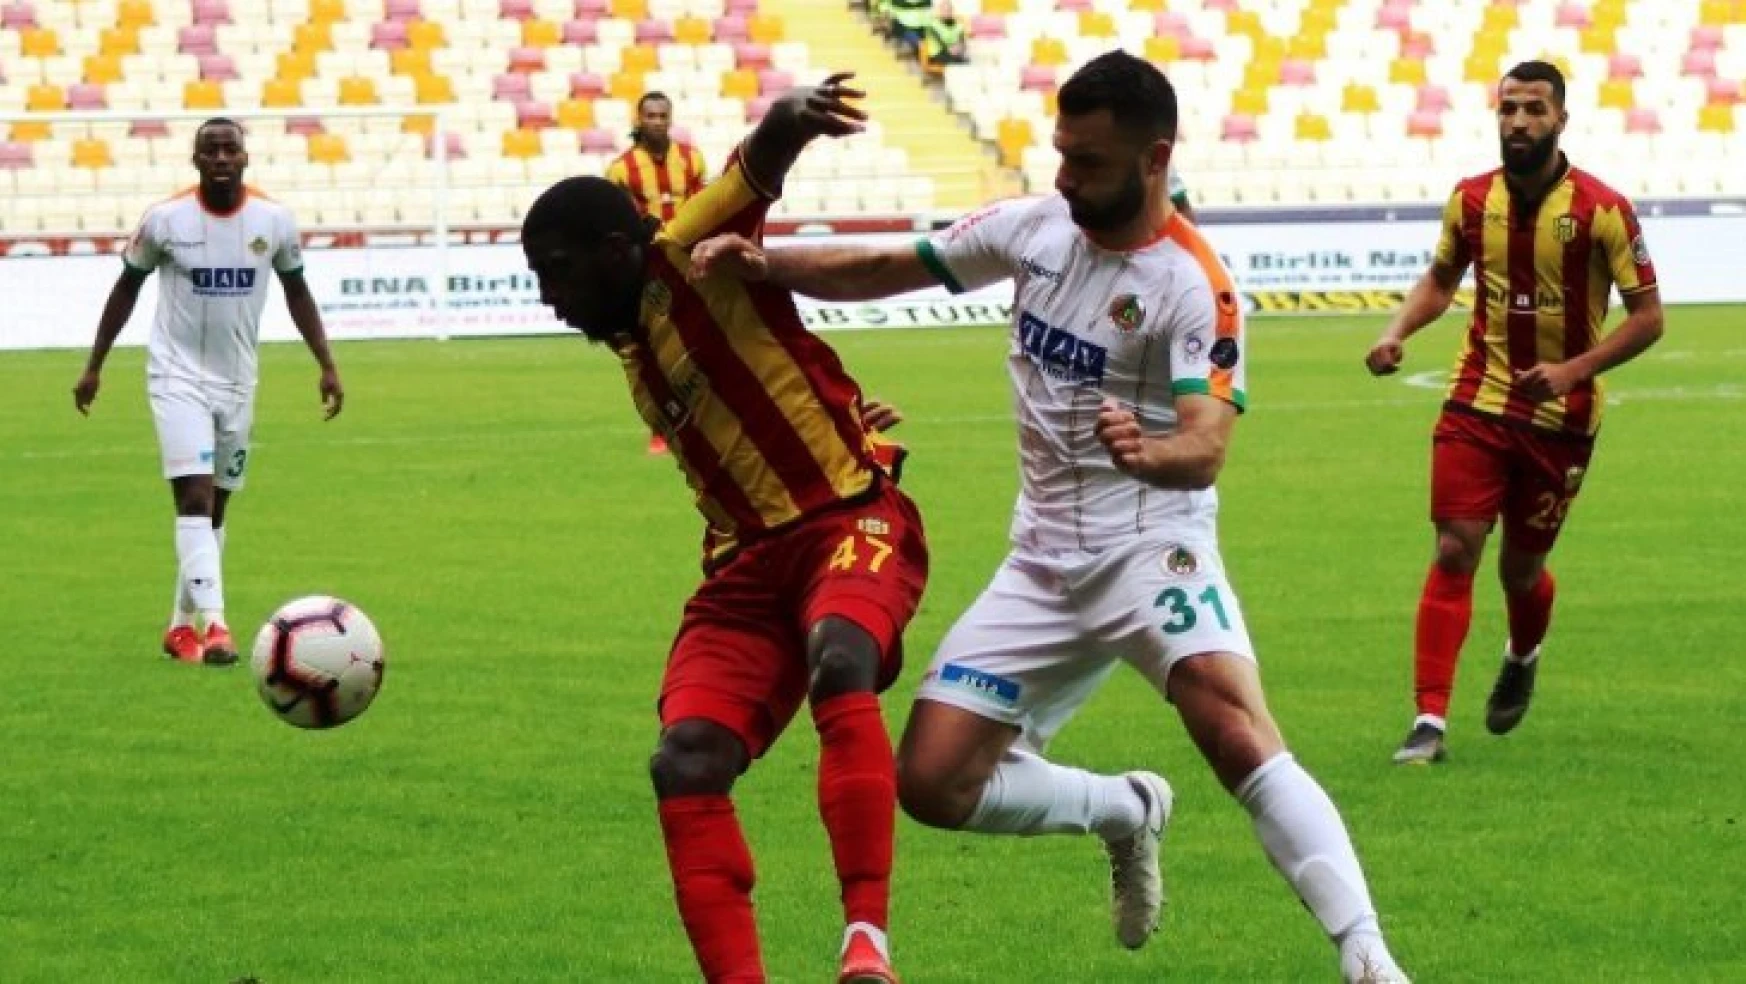 Evkur Yeni Malatyaspor, Kamara için teklifini sundu